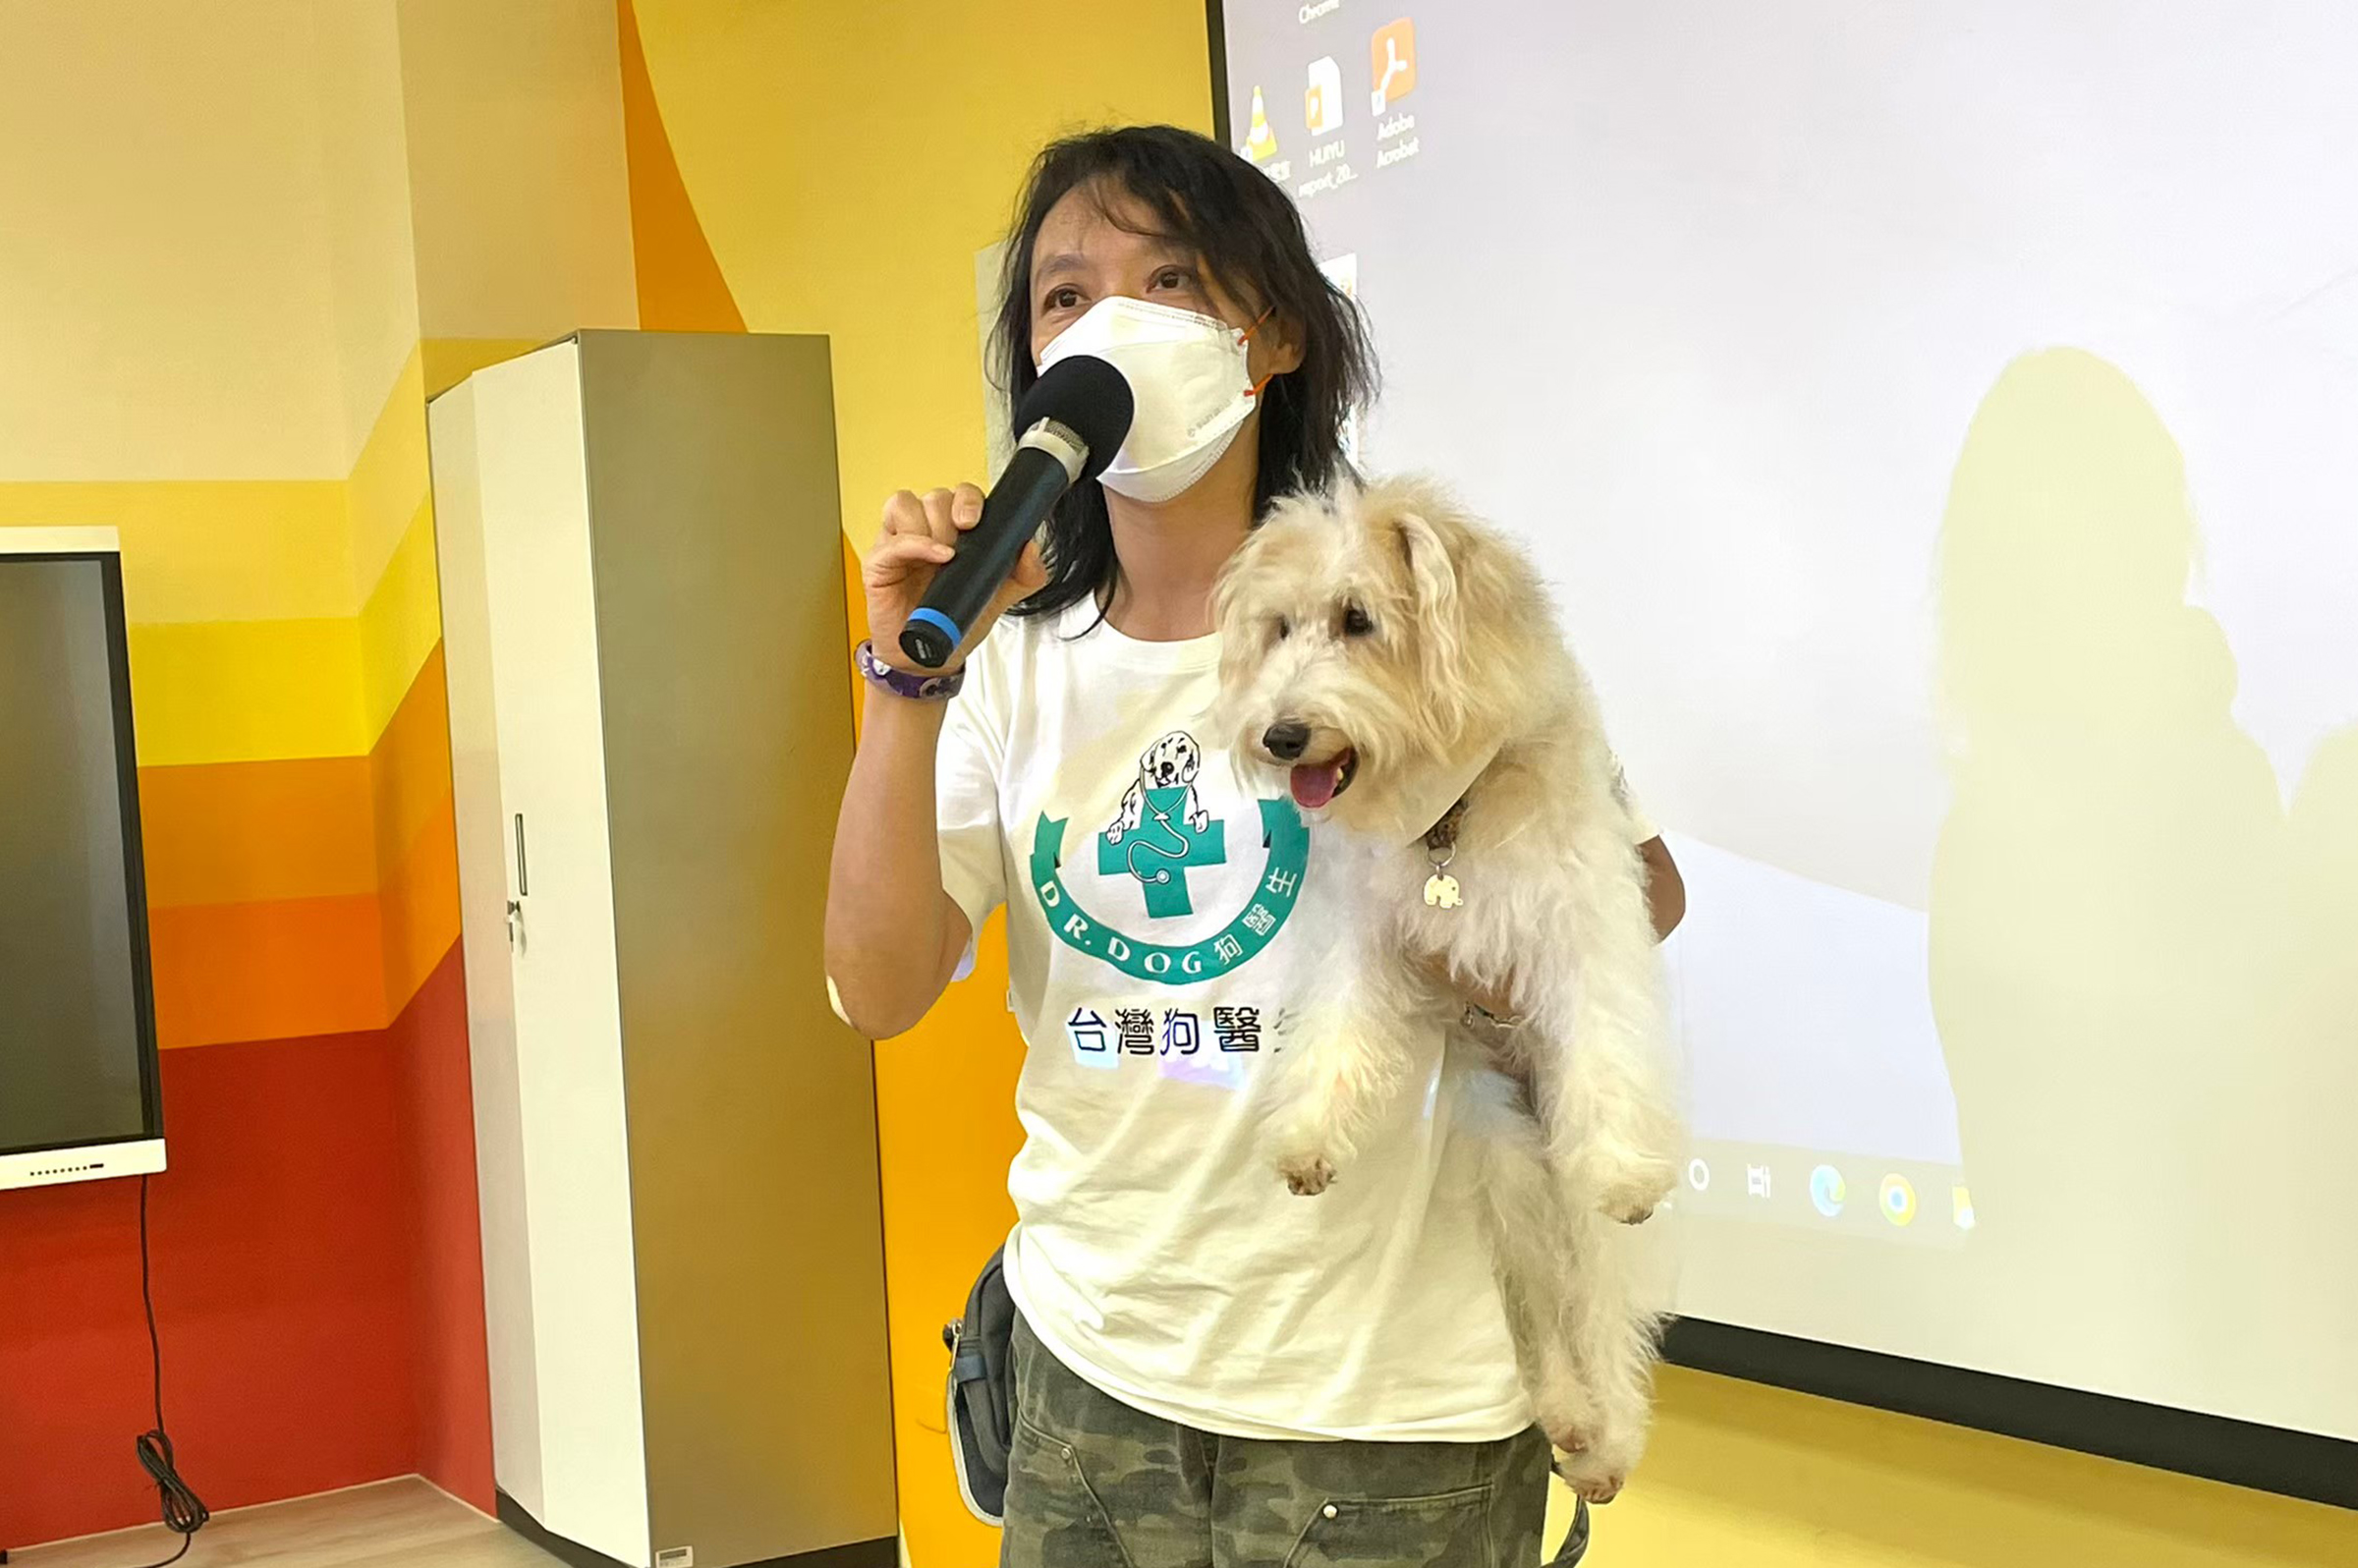 台灣狗醫生講師分享狗醫生如何以遊戲、親密互動陪伴病友、銀髮族。陳嬿如攝